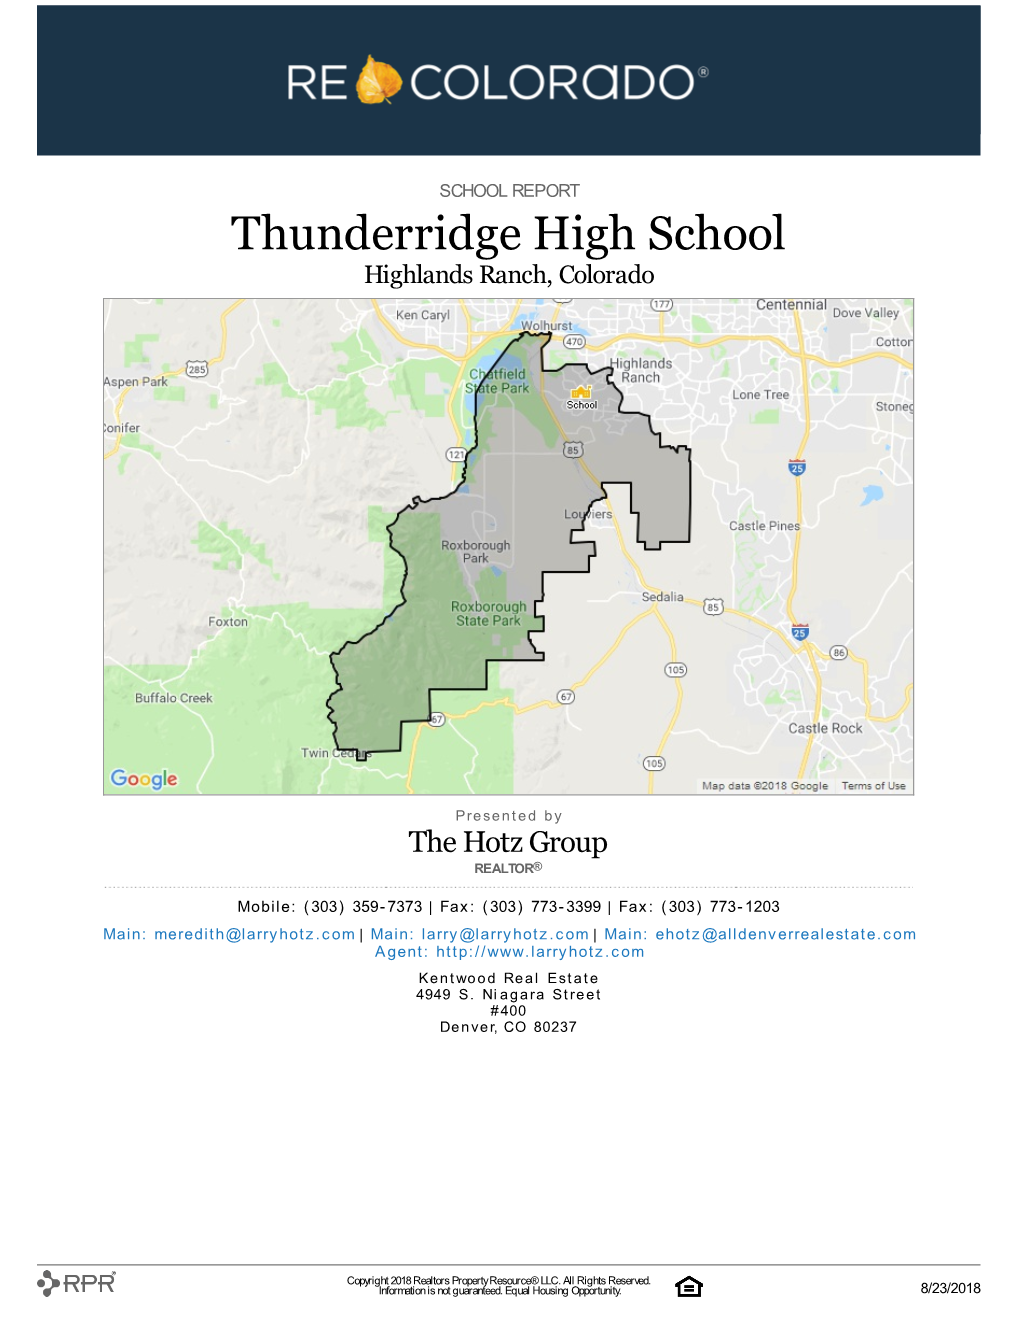 Thunderridge High School Highlands Ranch, Colorado